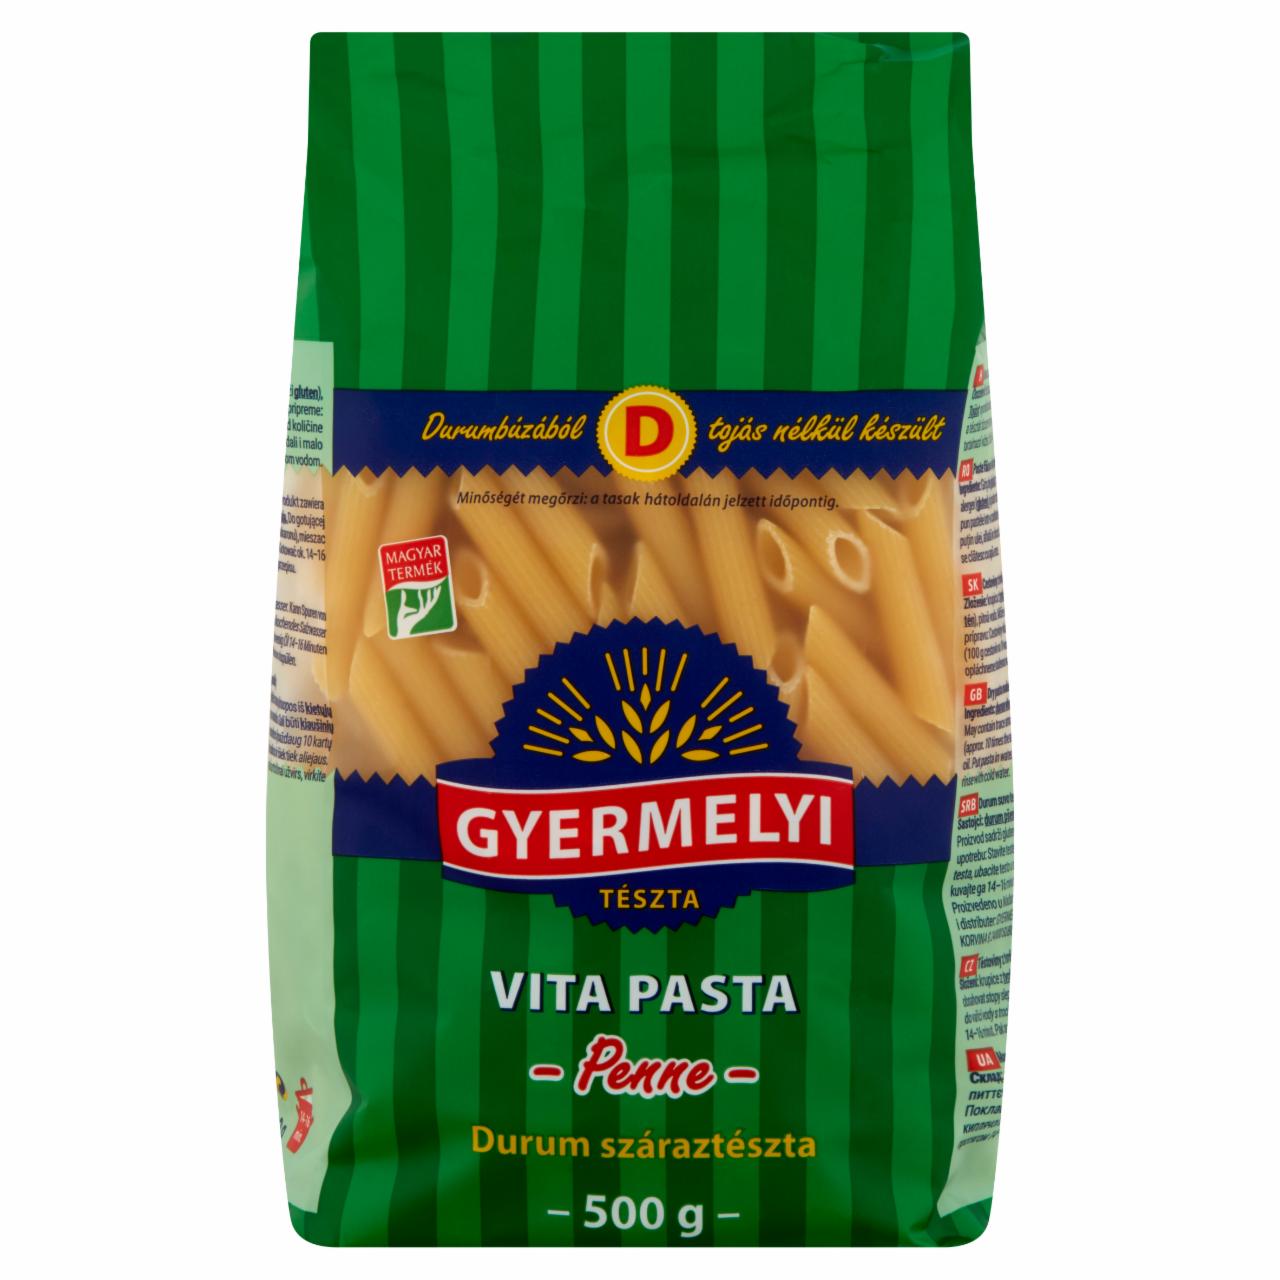 Képek - Gyermelyi Vita Pasta Penne durum száraztészta 500 g